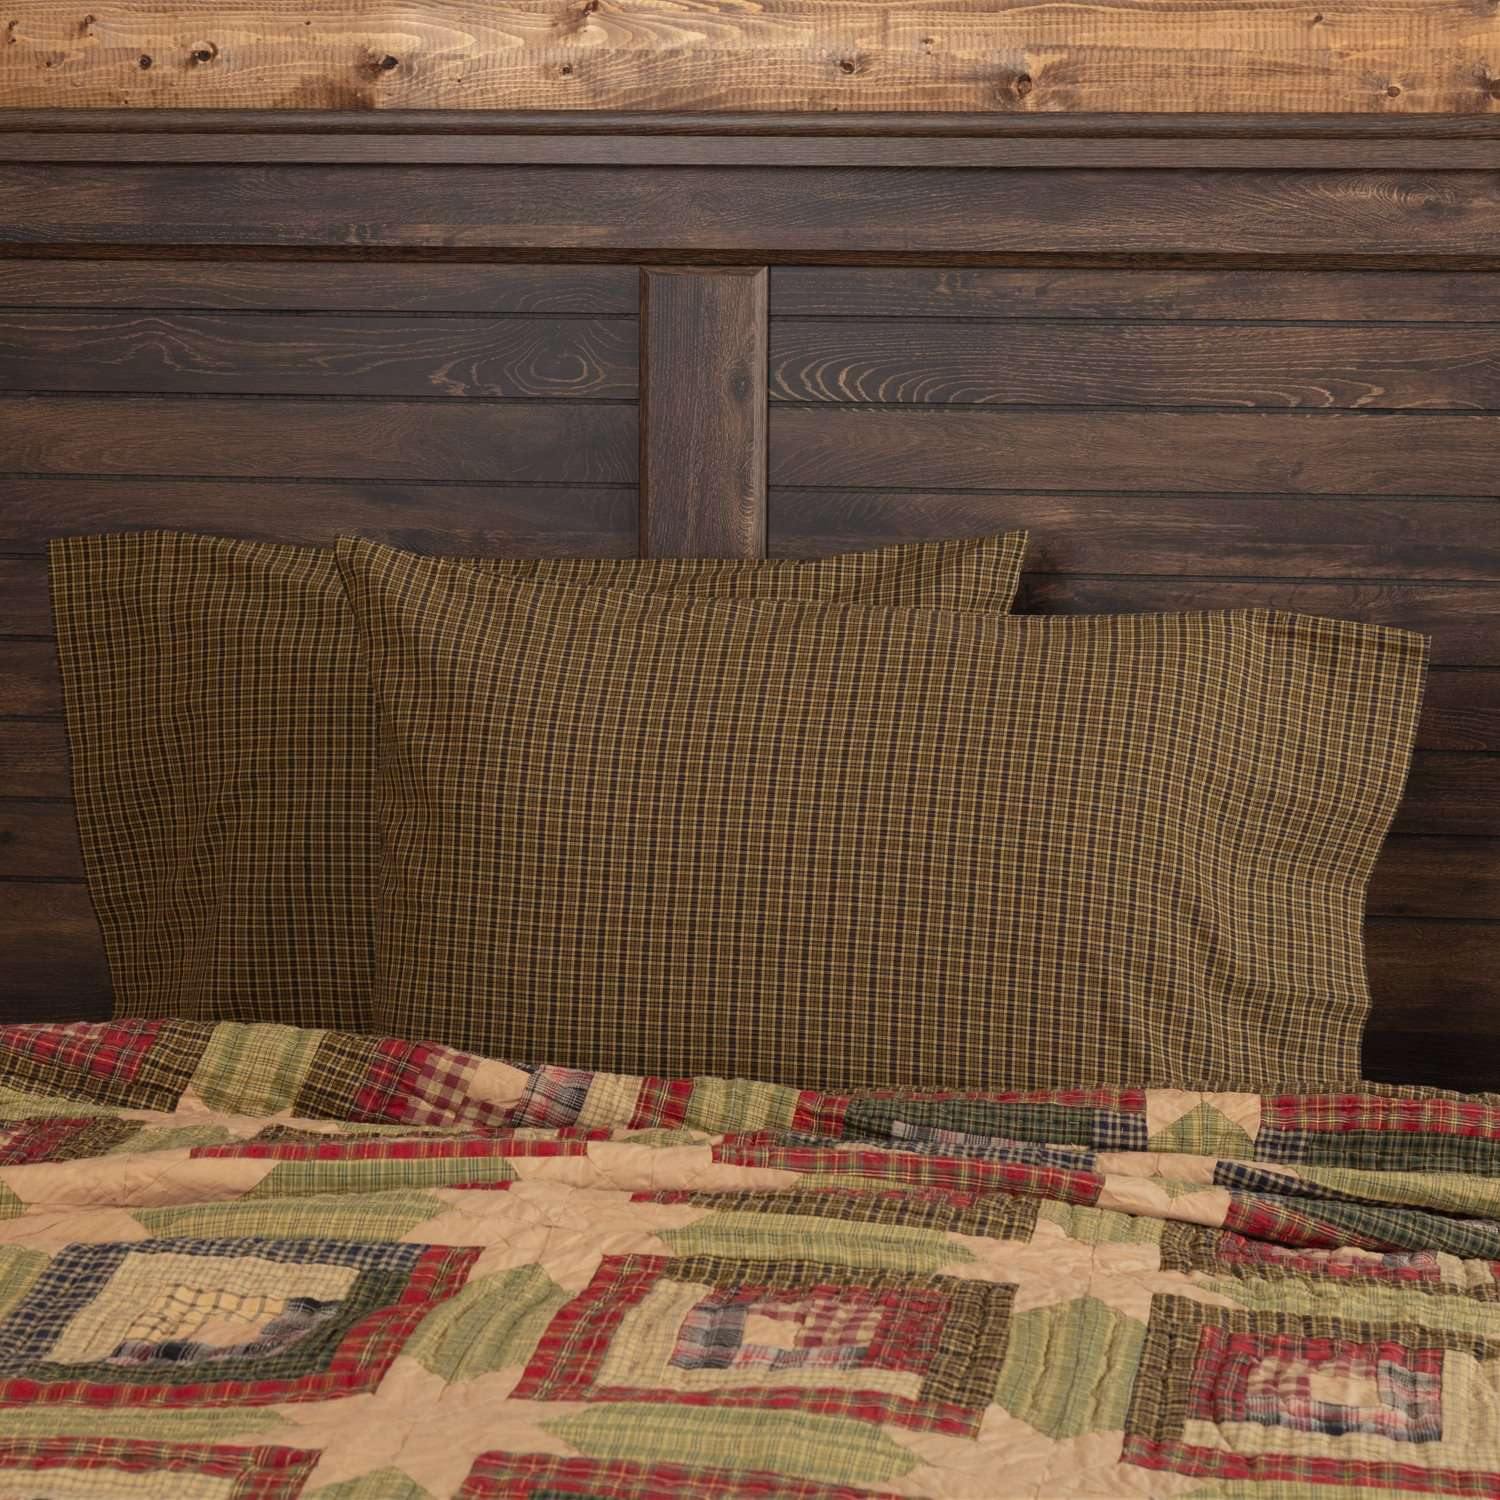 Tea Cabin Green Plaid Standard Pillow Case Set of 2 21x30